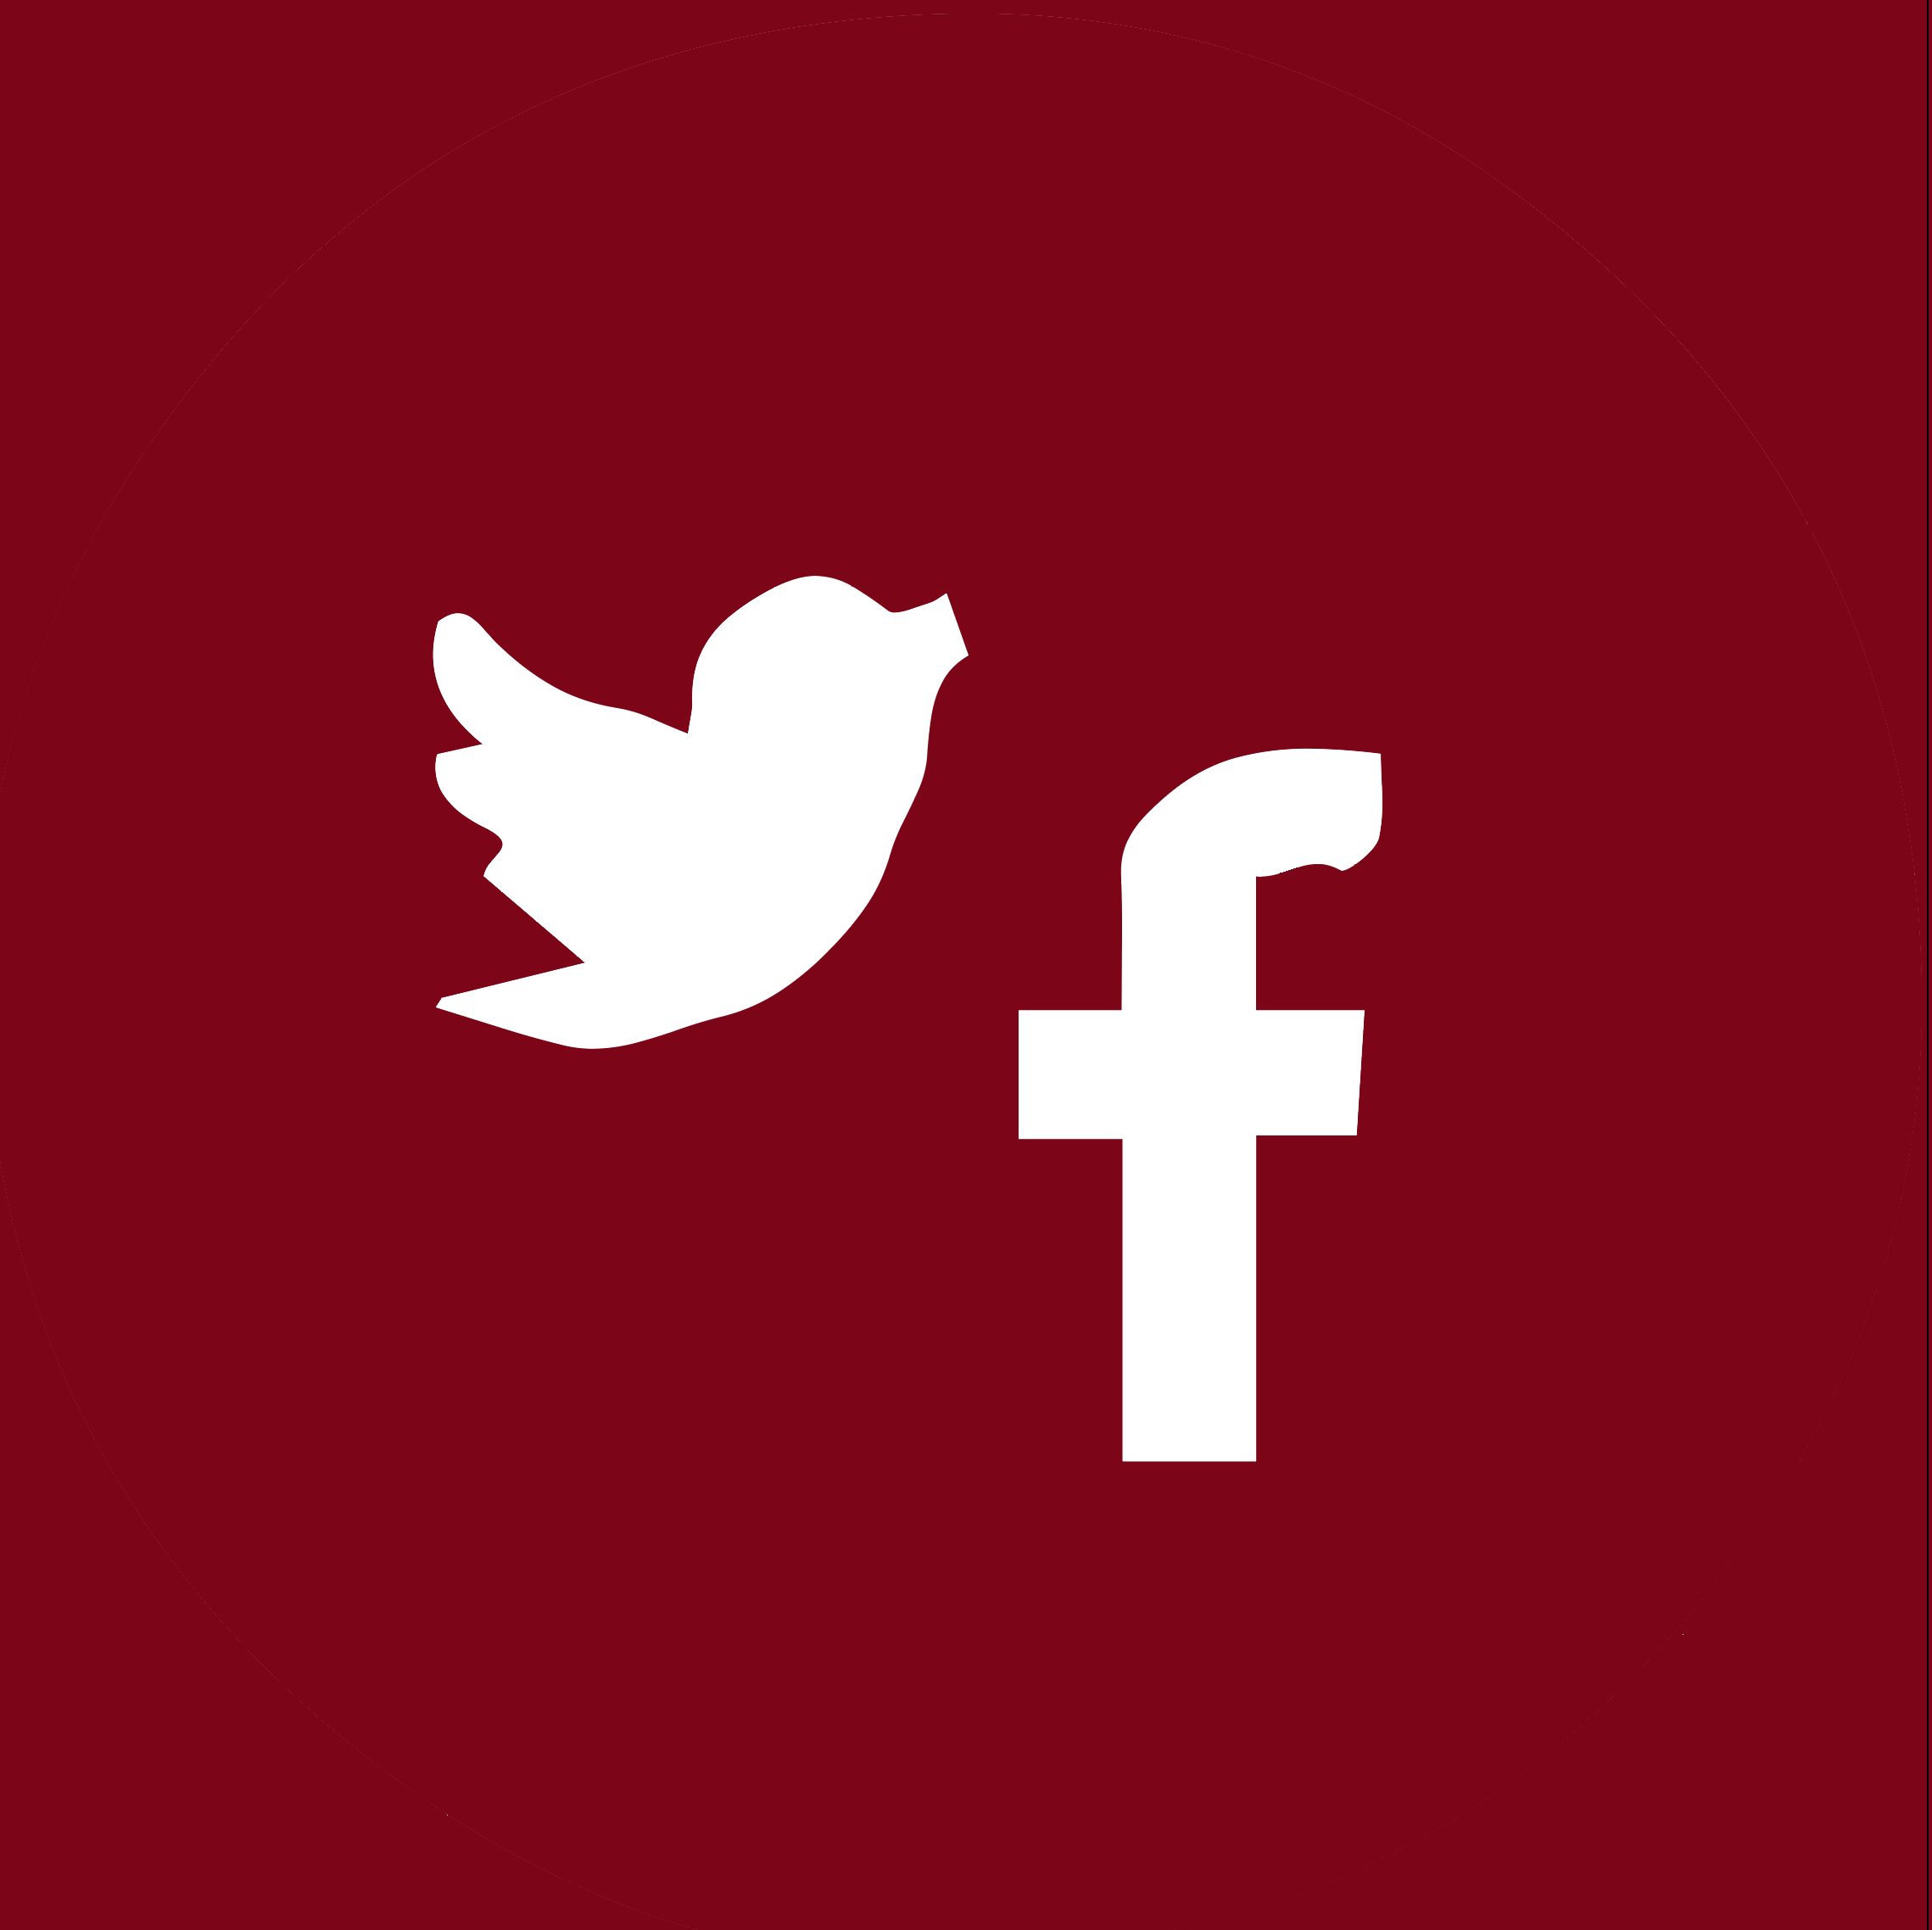 Logos von verschiedenen Socialmediaplattformen